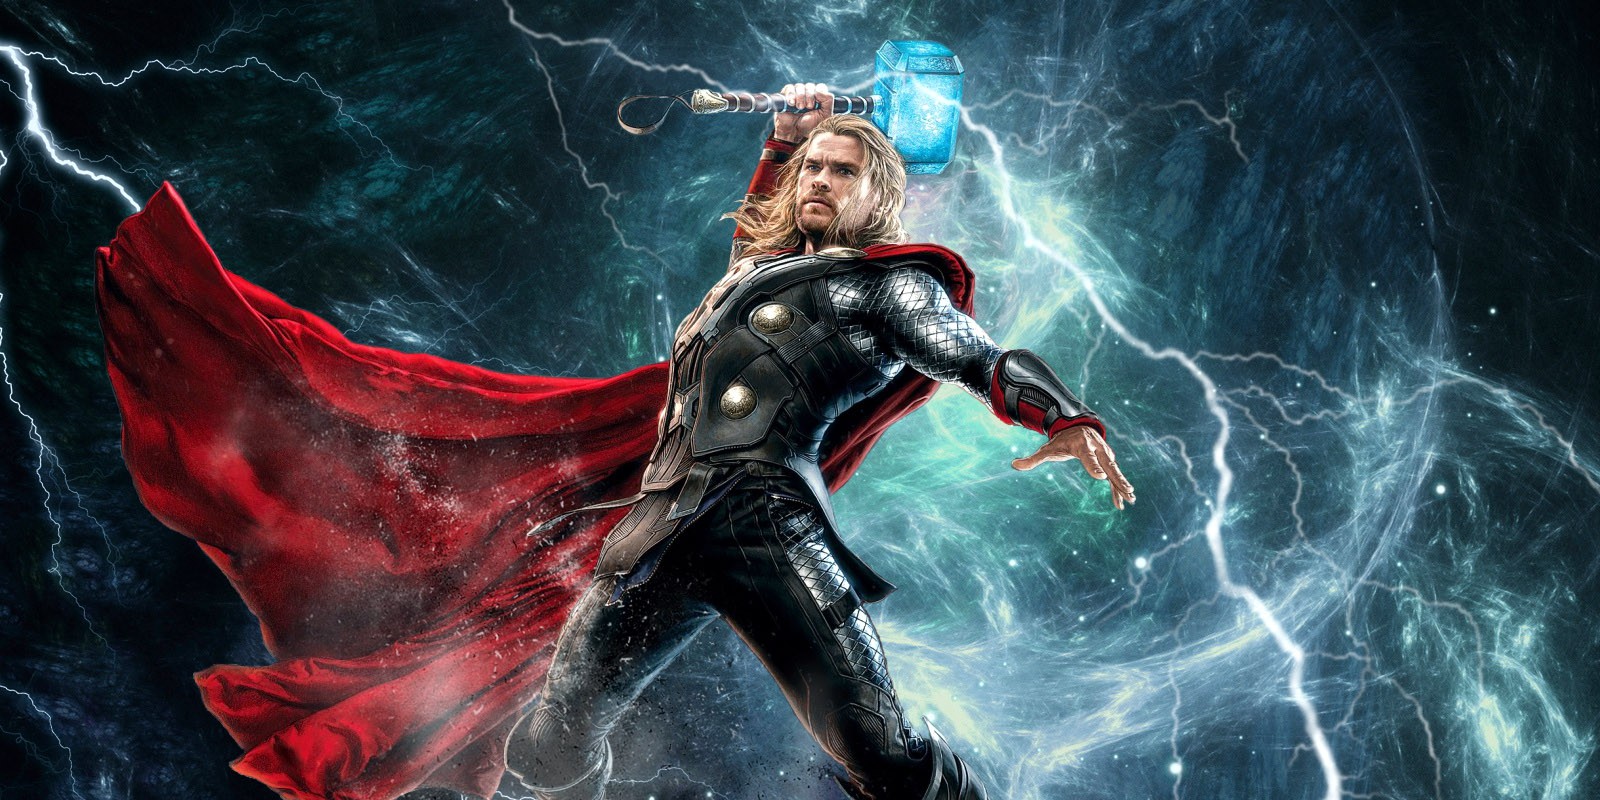 Thor 4 - người anh em, Thần Sấm là một trong những nhân vật nổi bật nhất trong loạt phim siêu anh hùng này. Hãy trải nghiệm vẻ đẹp ngoạn mục của Thor thông qua bộ sưu tập những hình ảnh chất lượng 4k đầy ấn tượng.